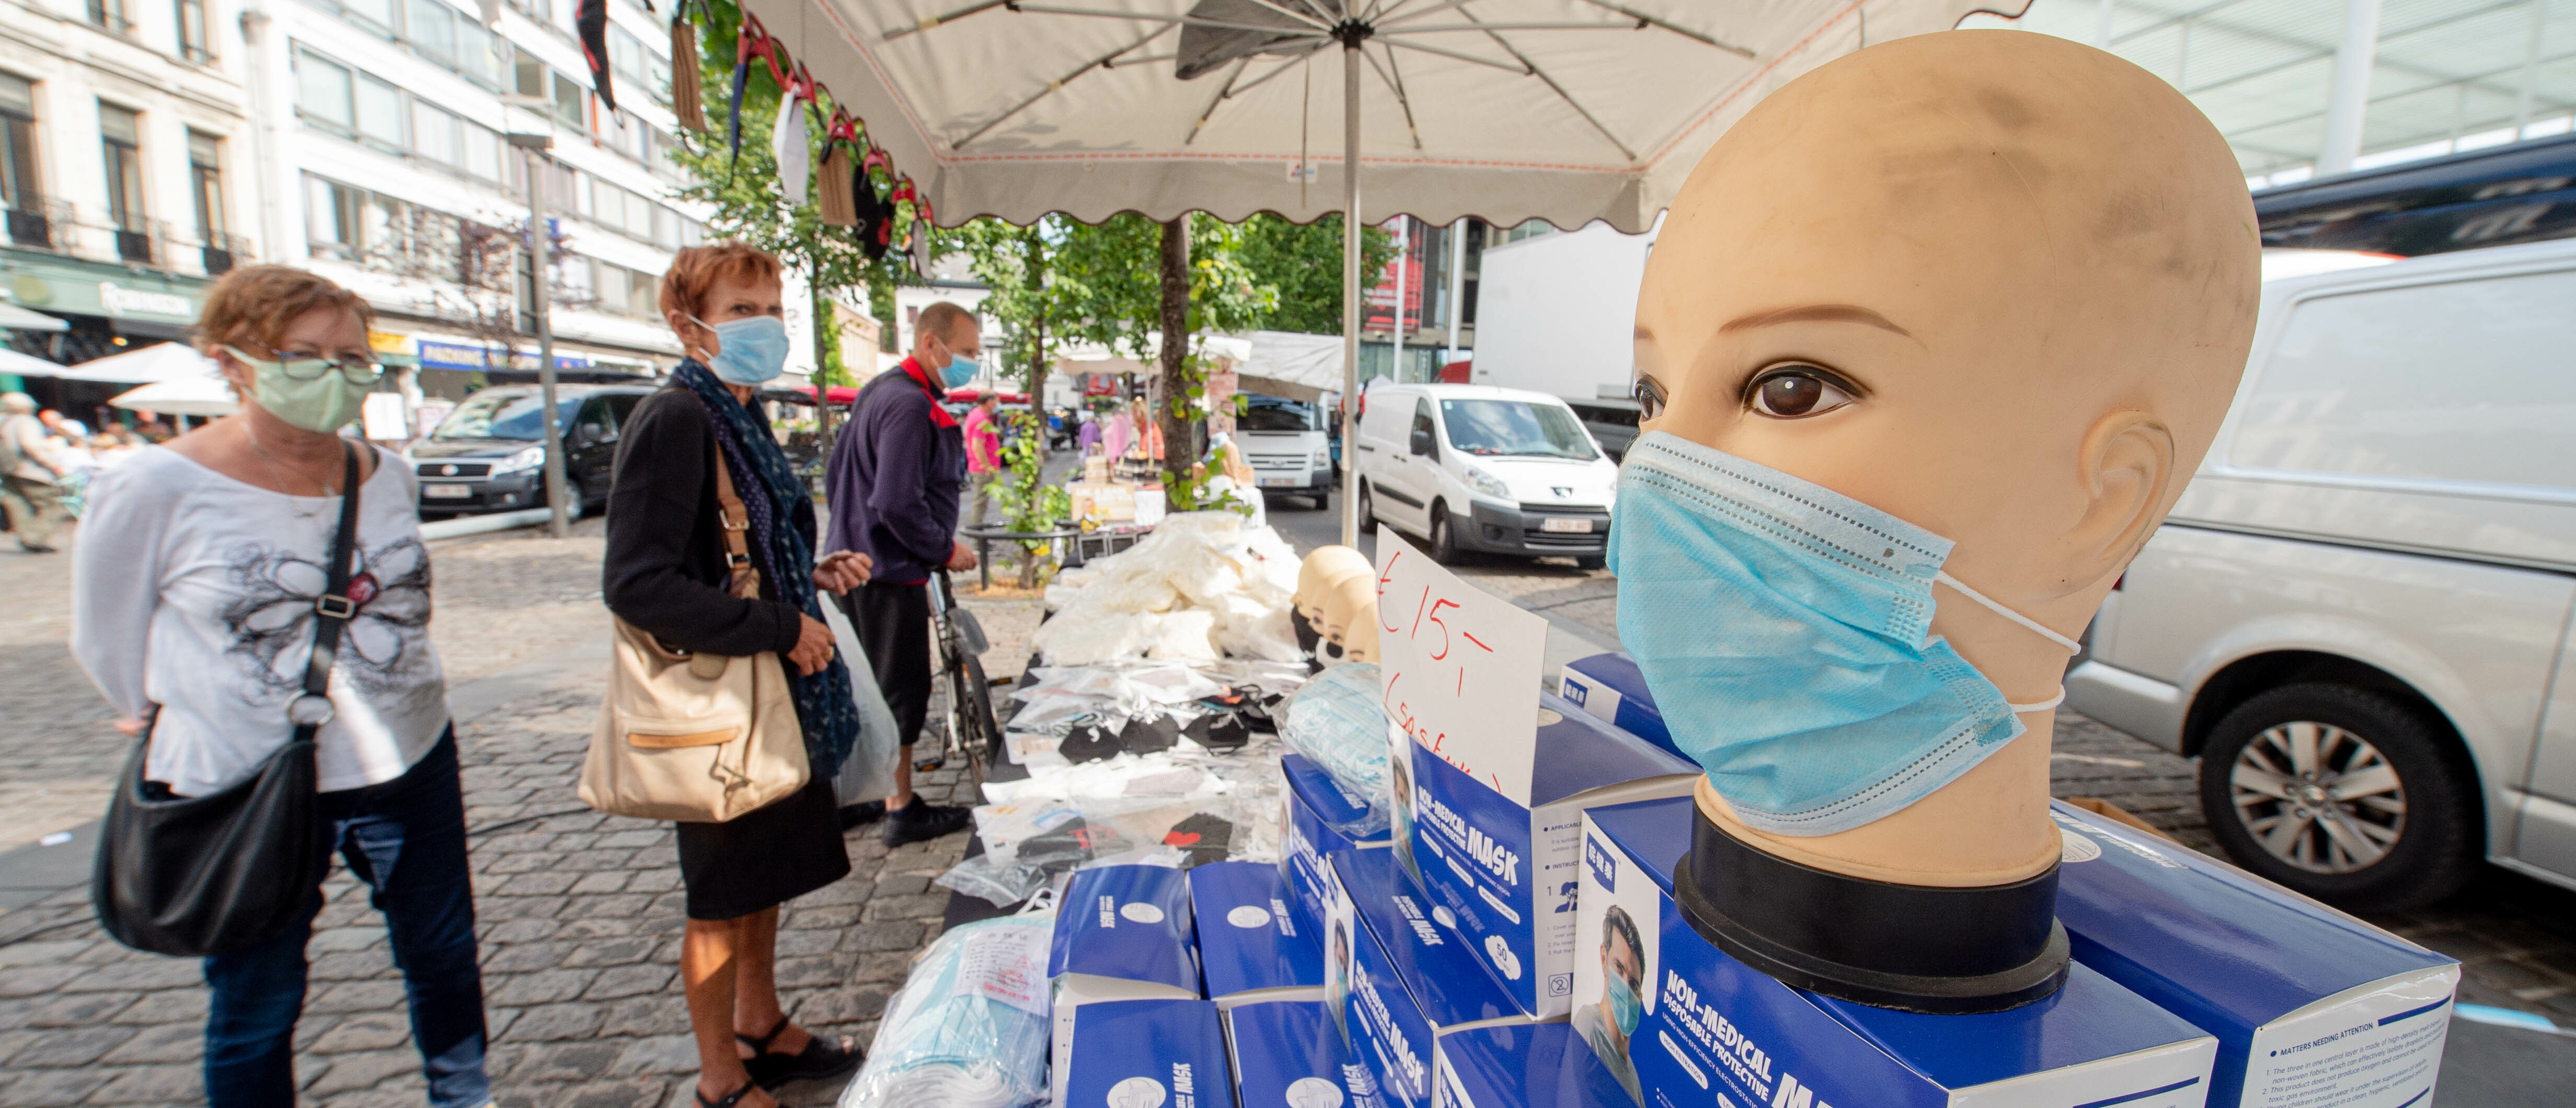 Een foto van een pop met een mondkapje in Antwerpen